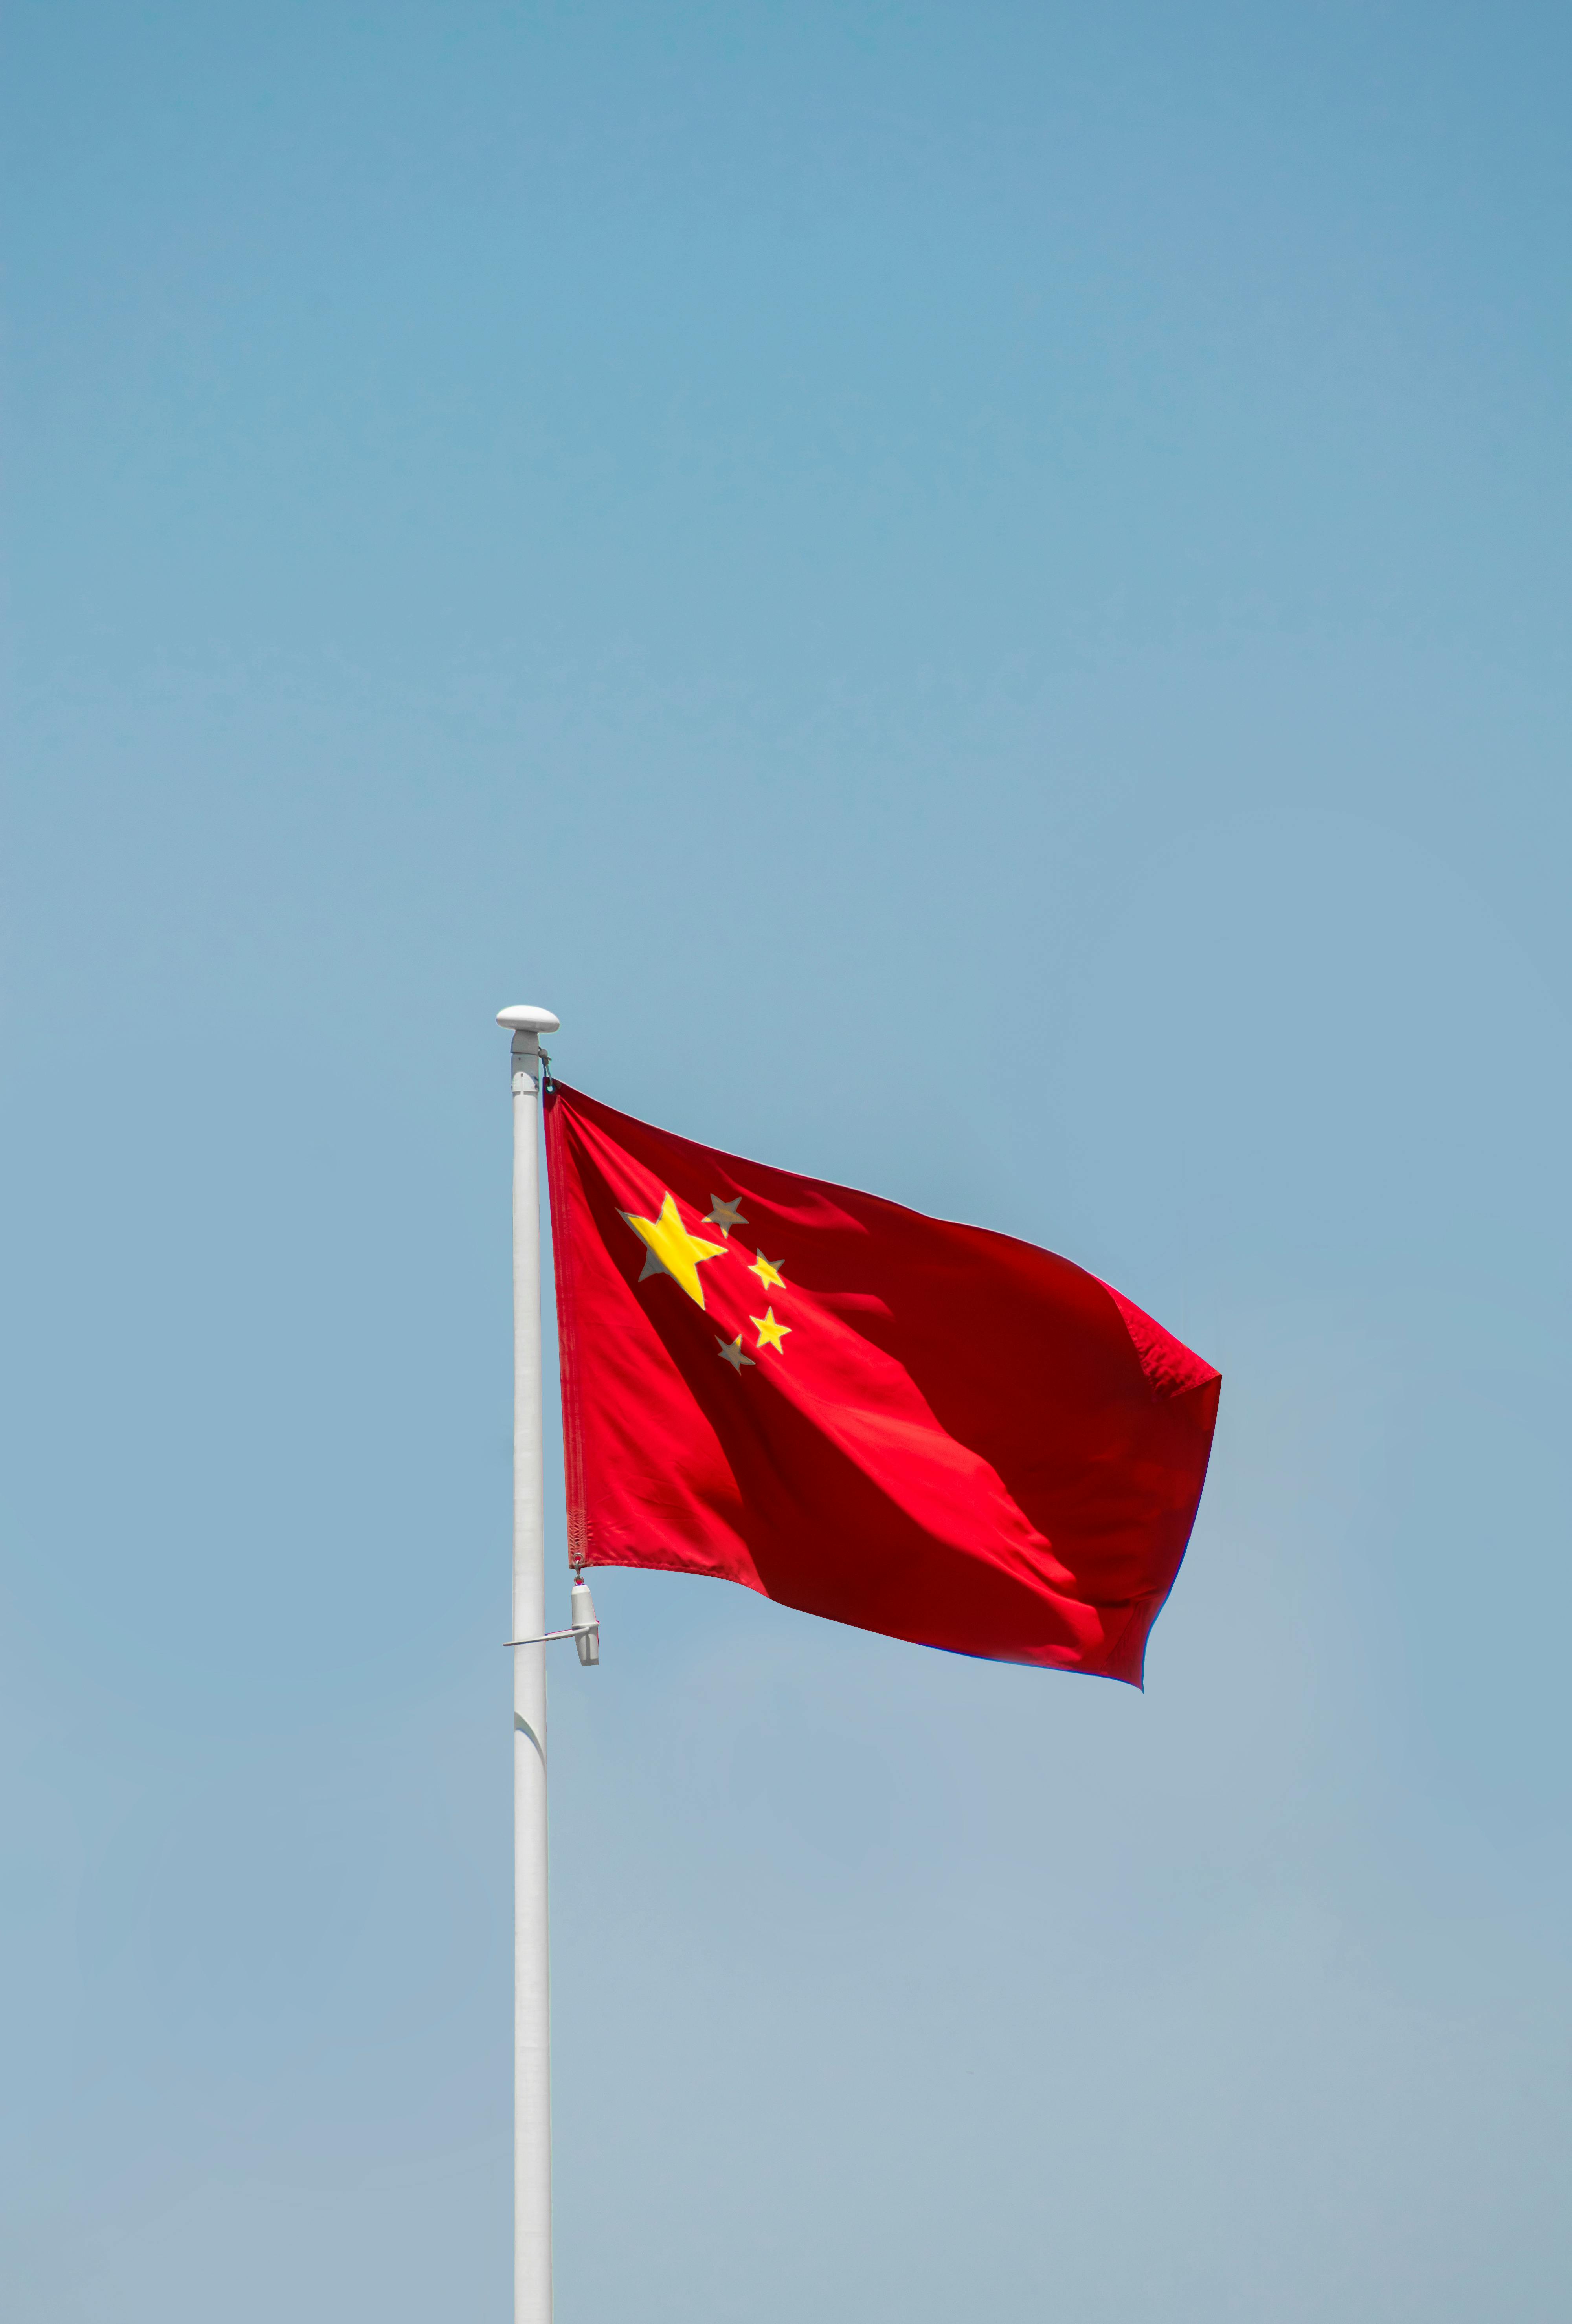 Ảnh đẹp cờ Trung Quốc là sự lựa chọn hoàn hảo cho những ai muốn truyền tải thông điệp văn hóa và lịch sử của đất nước này. Với màu sắc tươi sáng và thiết kế độc đáo, ảnh đẹp cờ Trung Quốc sẽ khiến bạn cảm thấy tự hào về quốc gia này.